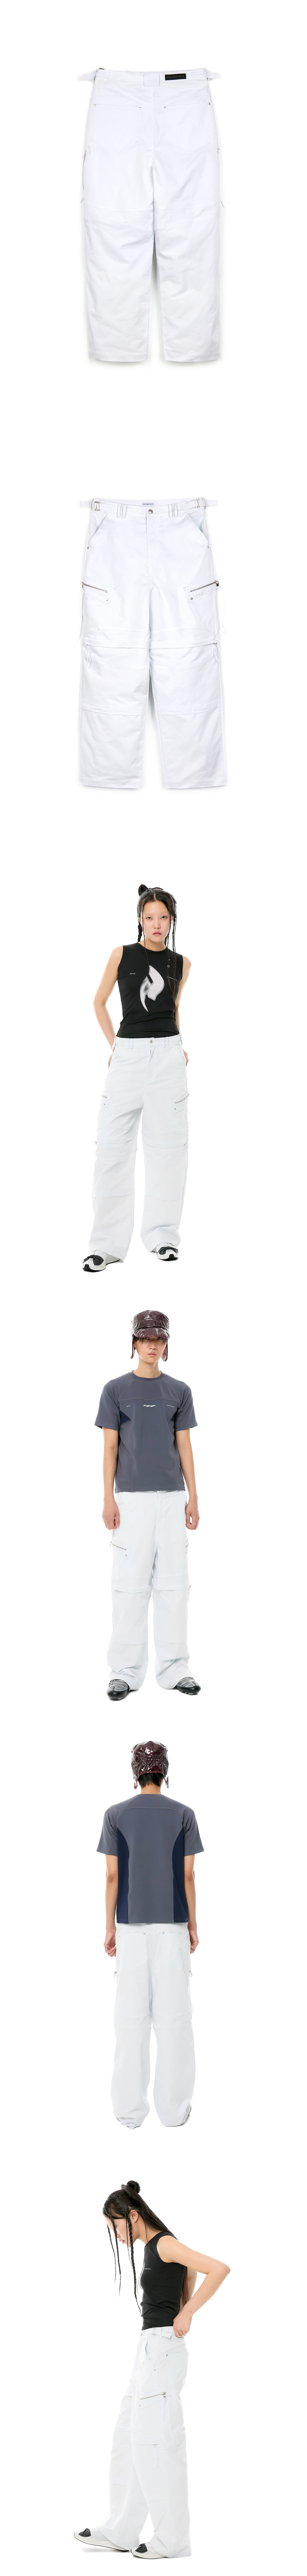 002-23 zipper pants - white